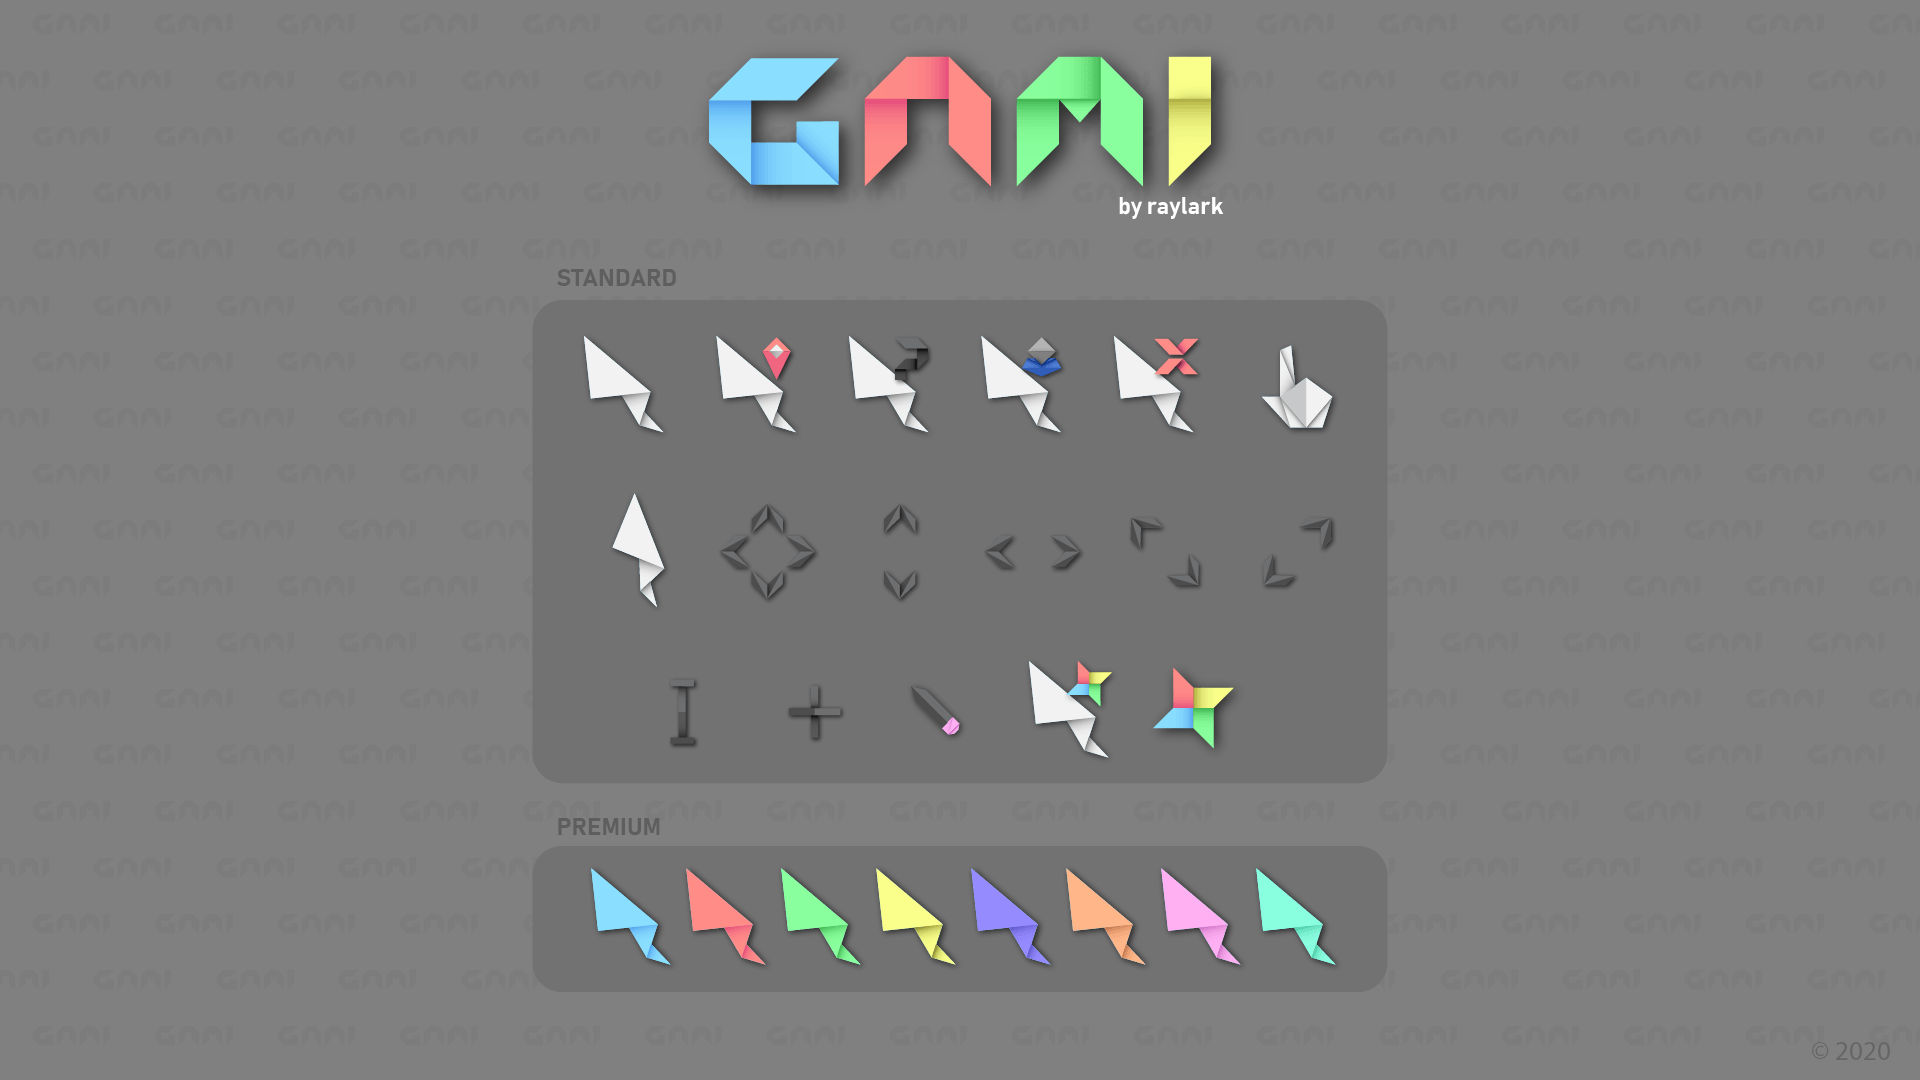 超好看的鼠标指针折纸Gami 共九种颜色风格